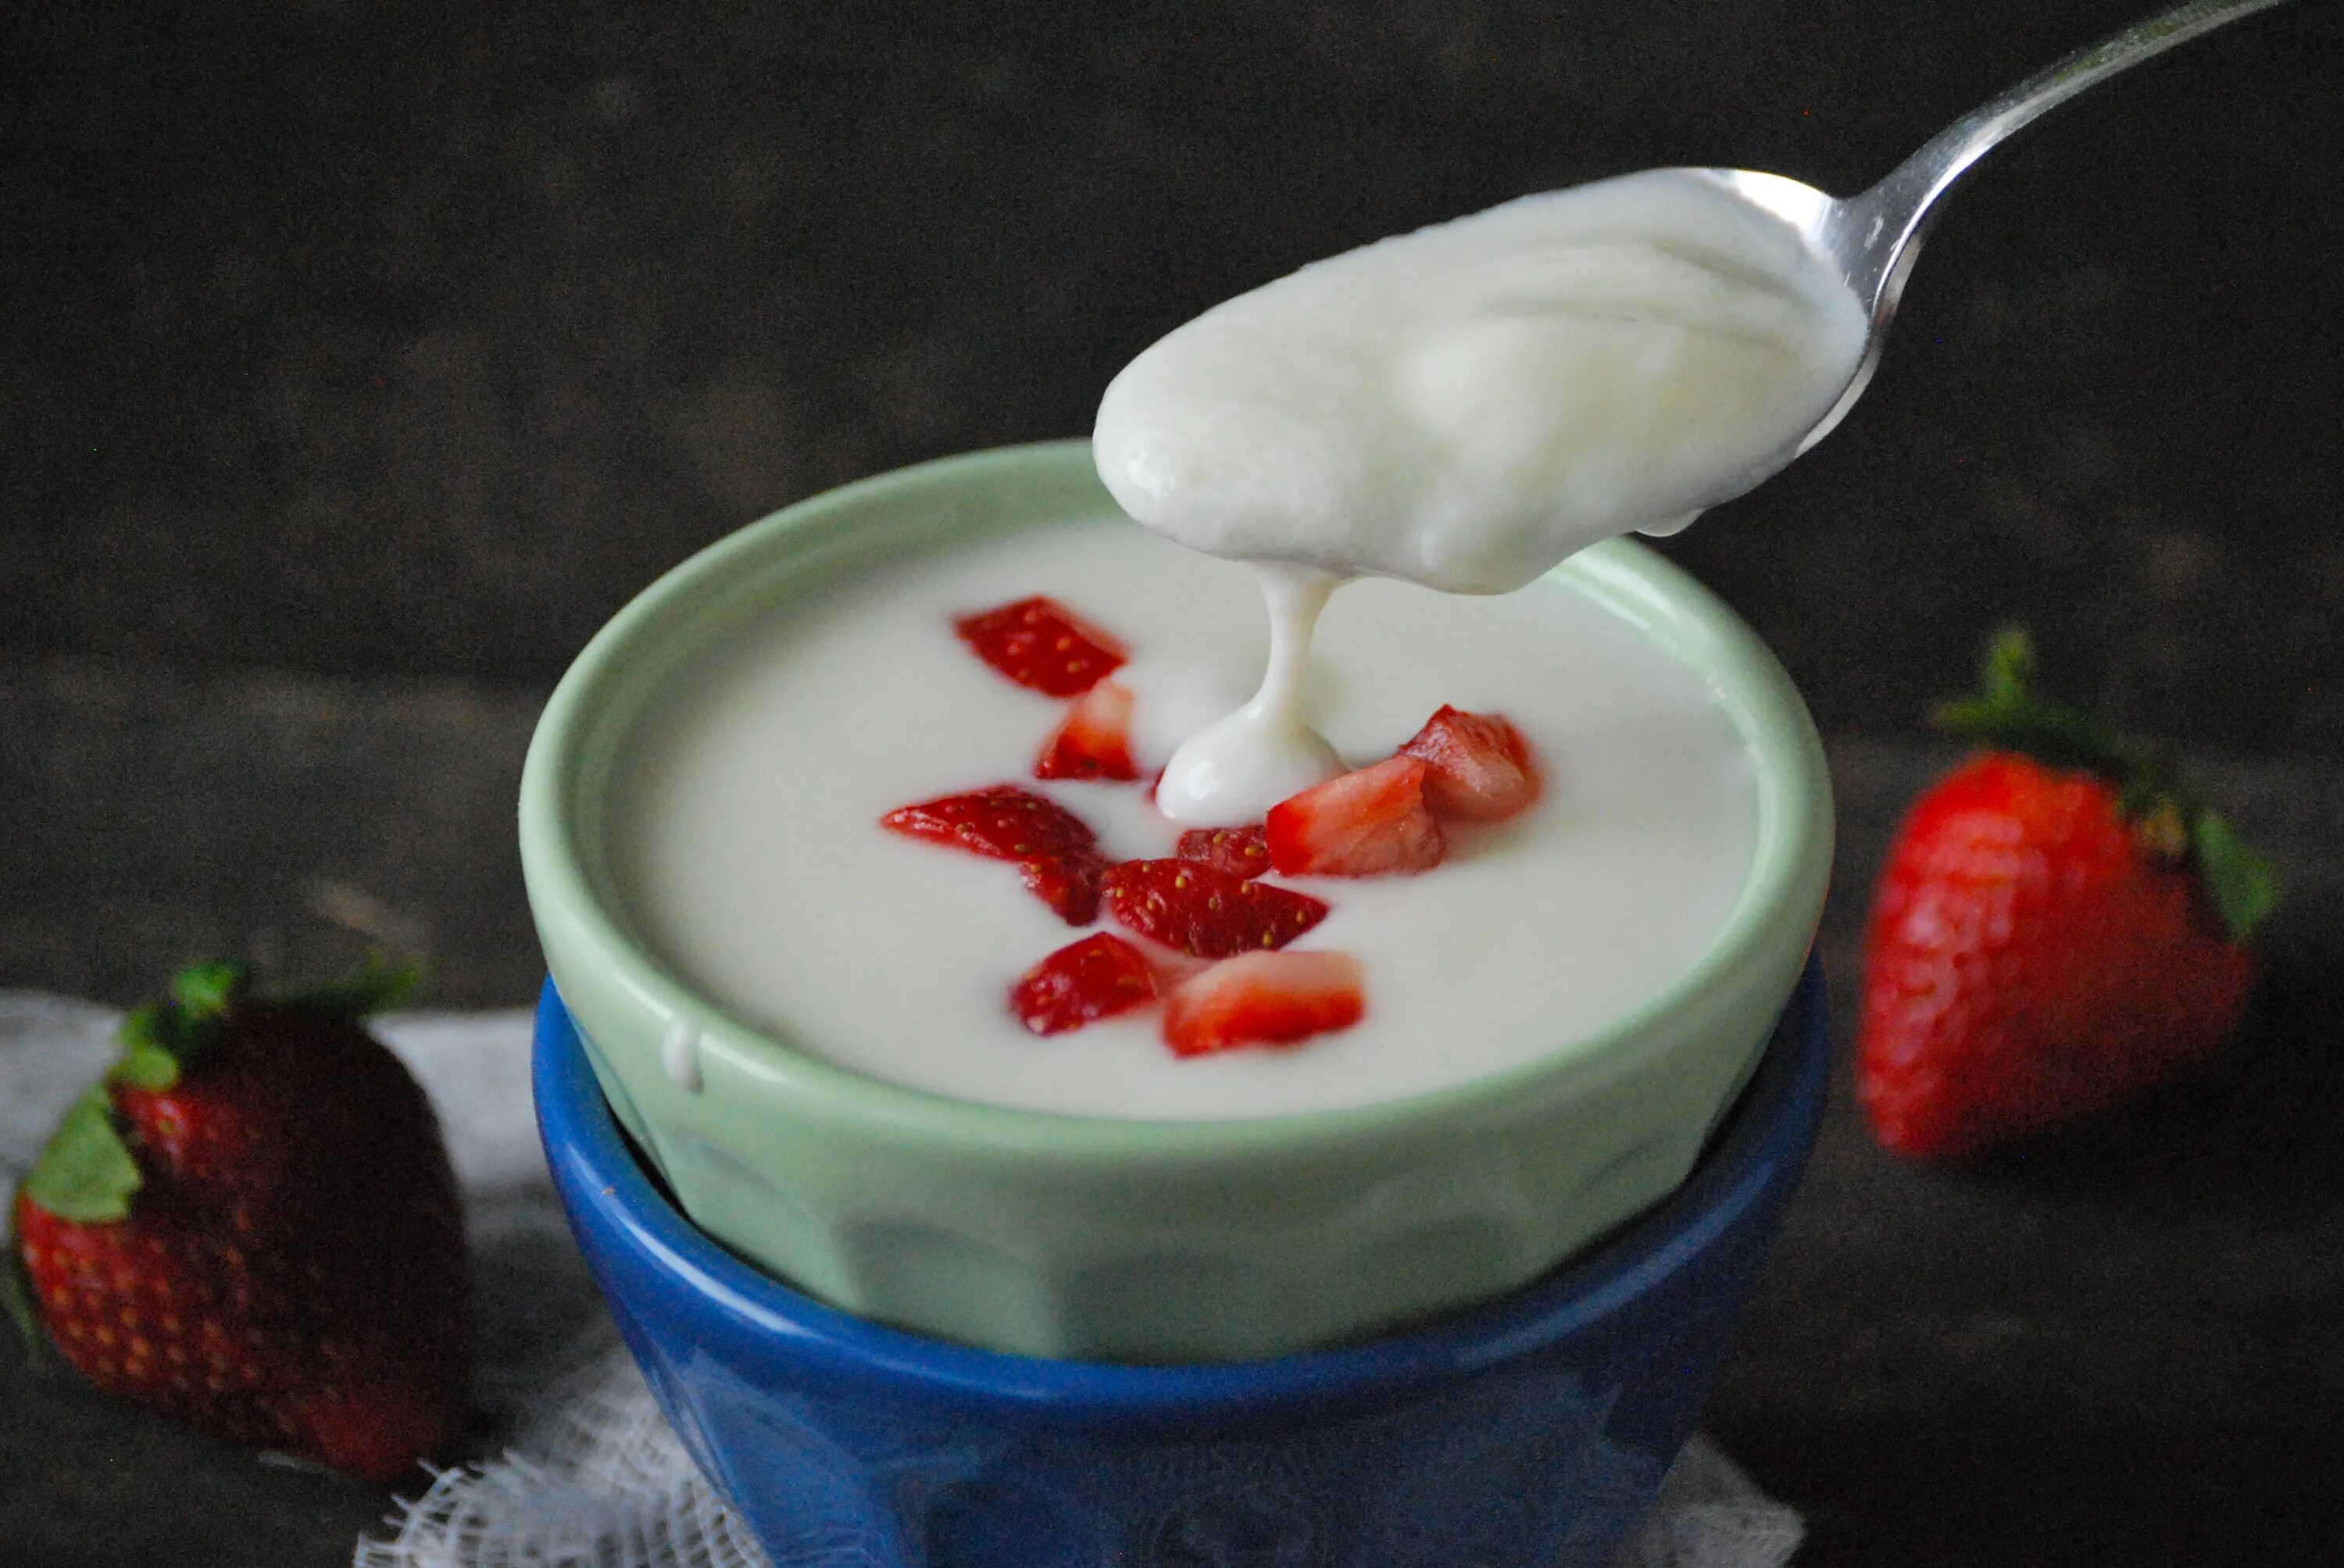 Фото йогурта. Вилли йогурт. Йогурт консистенция. Йогурт чаша. Йогурт в тарелке.